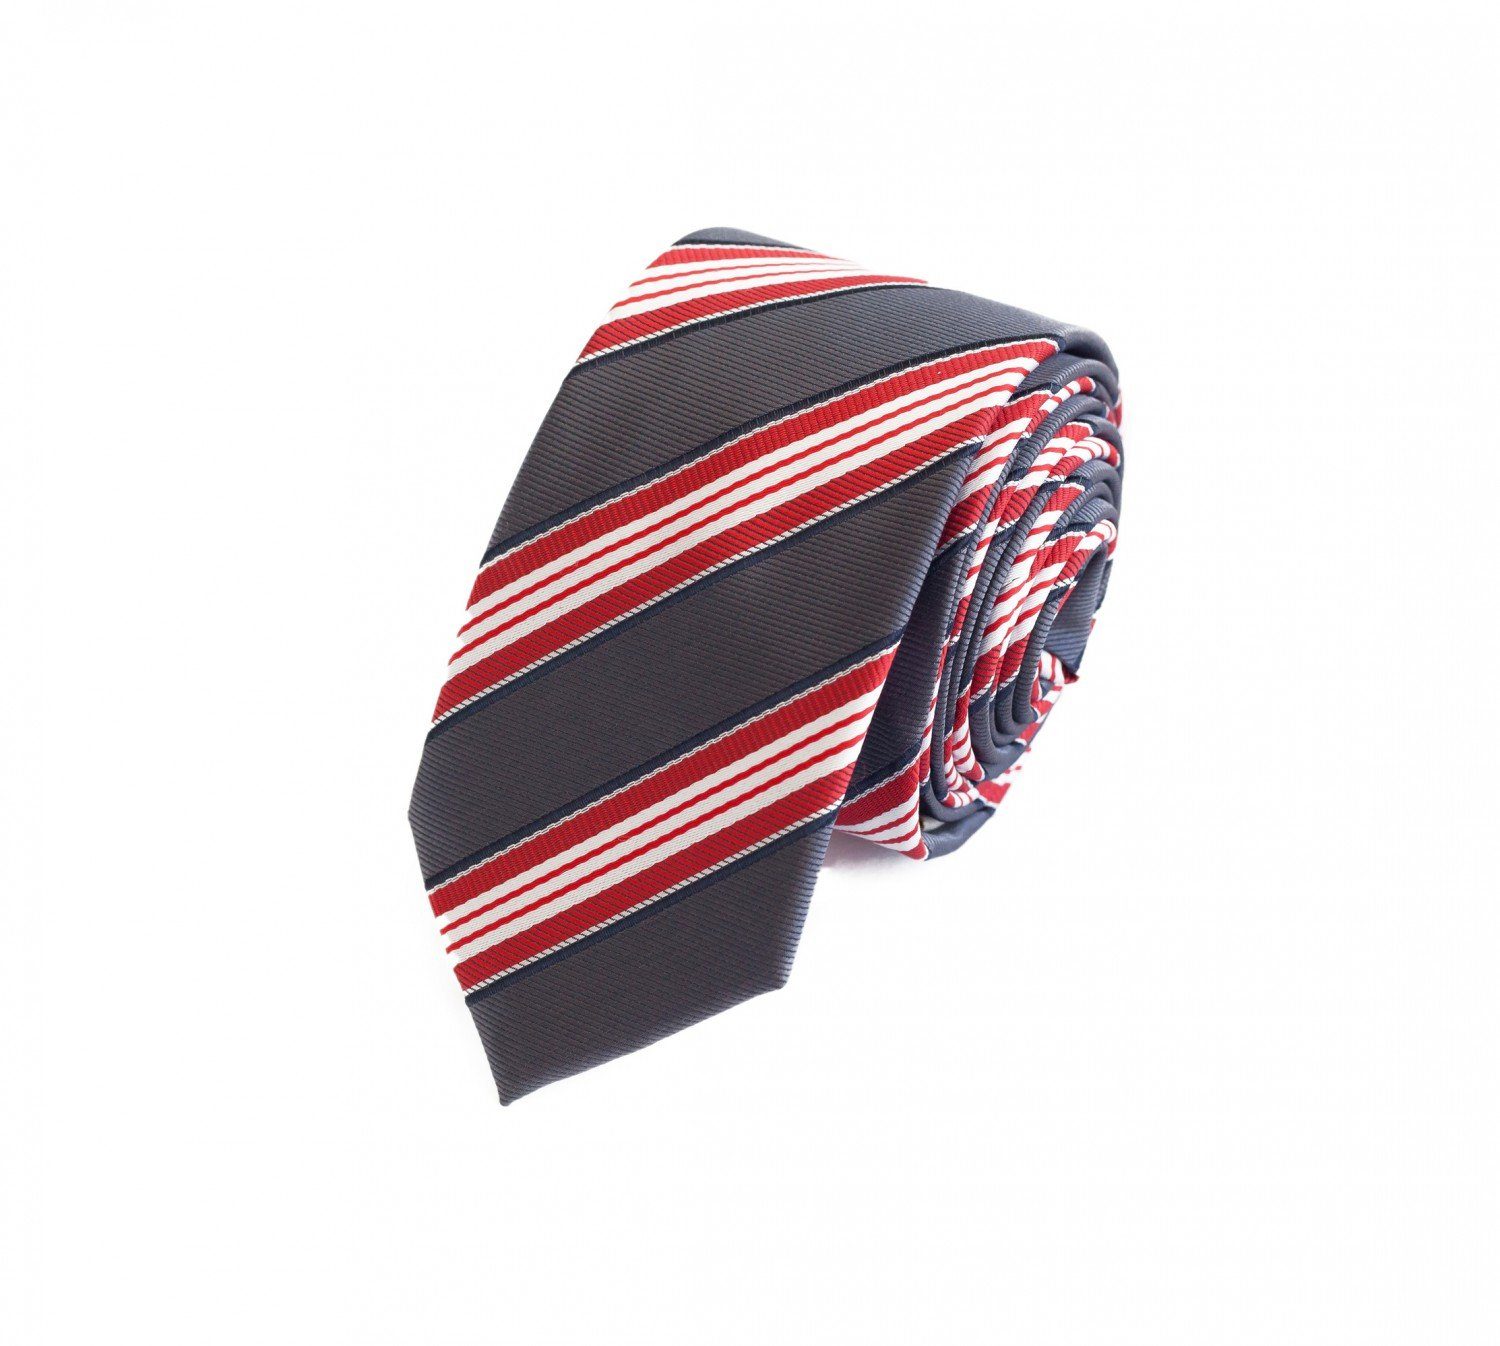 Fabio Farini Krawatte gestreifte Herren Krawatte - Tie mit Streifen in 6cm oder 8cm Breite (ohne Box, Gestreift) Schmal (6cm), Grau/Rot/Weiß